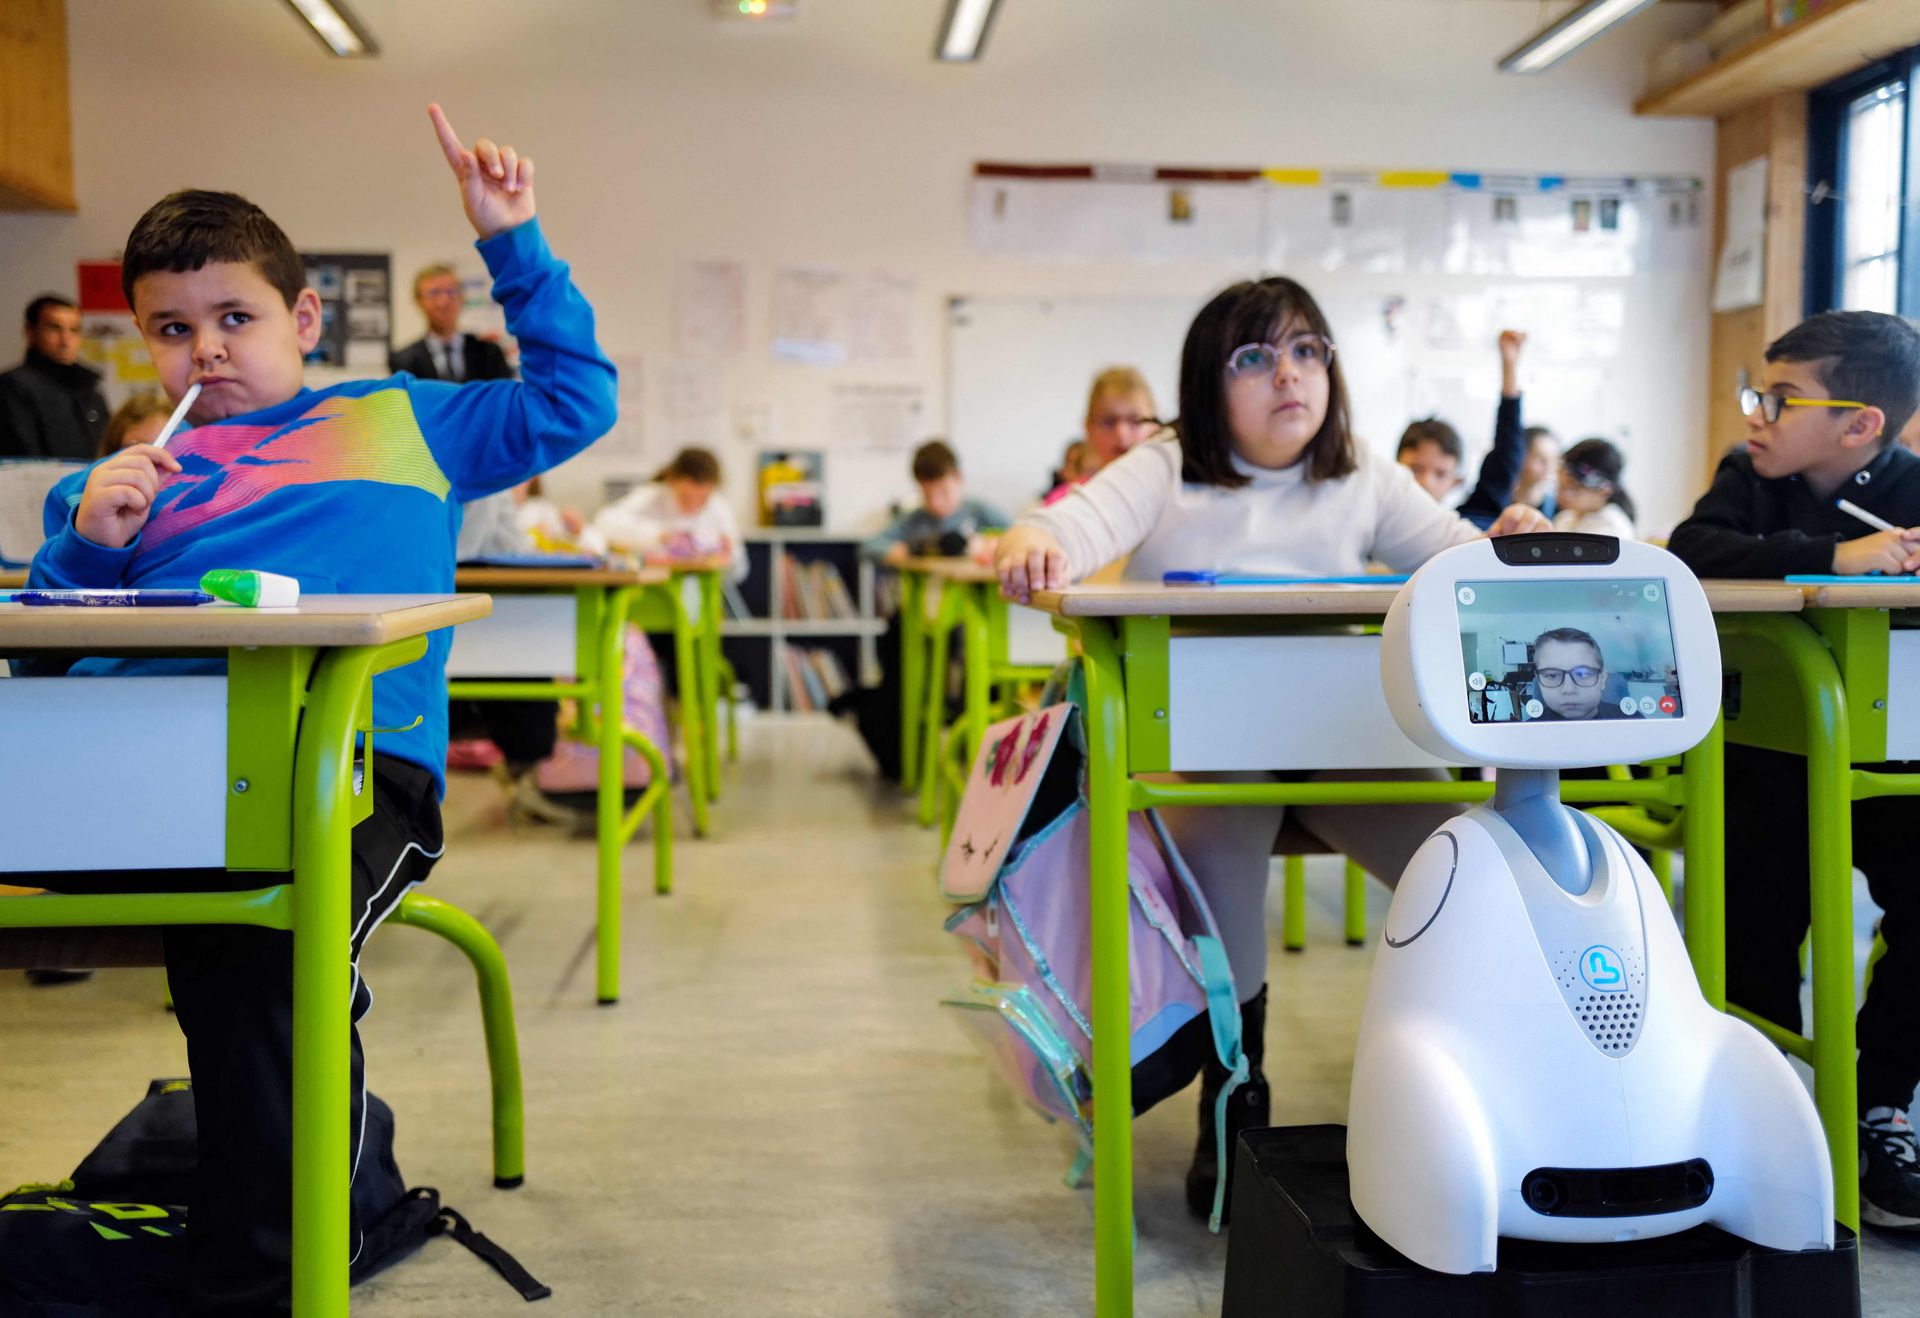 Flere elever sitter bak grønne pulter og rekker hånden i været, og foran den ene eleven står det en liten, hvit robot på et bord, med en skjerm som viser ansiktet til en elev.